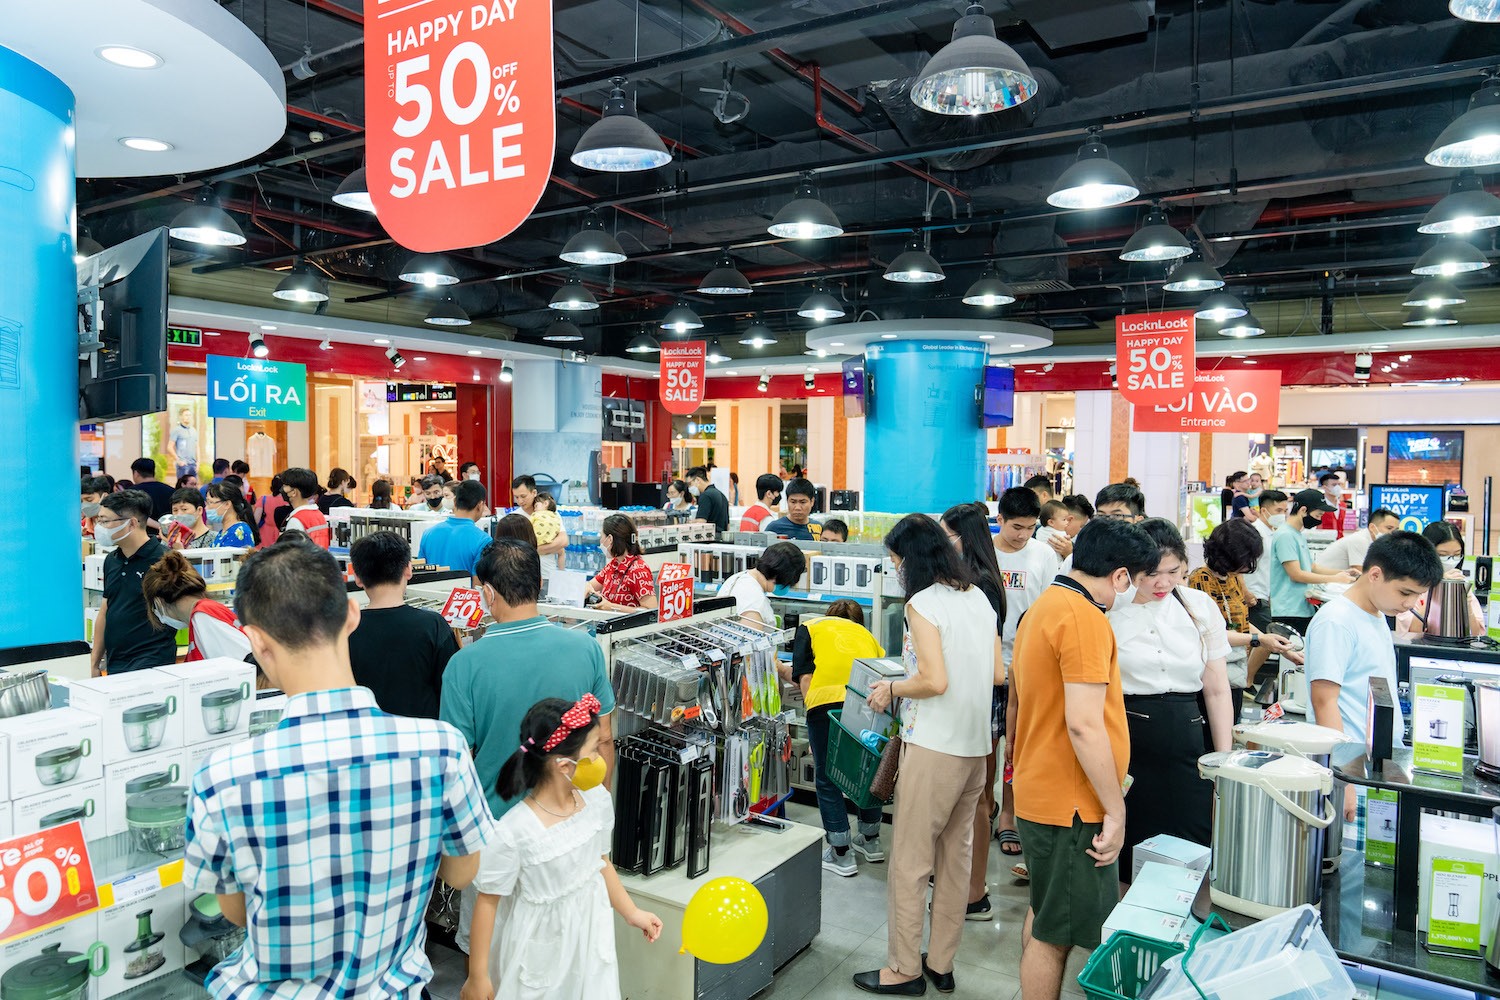 Lock&Lock tung ra chương trình sale độc quyền với mức ưu đãi giảm giá 50% toàn bộ sản phẩm chỉ có tại Vincom Mega Mall Royal City.